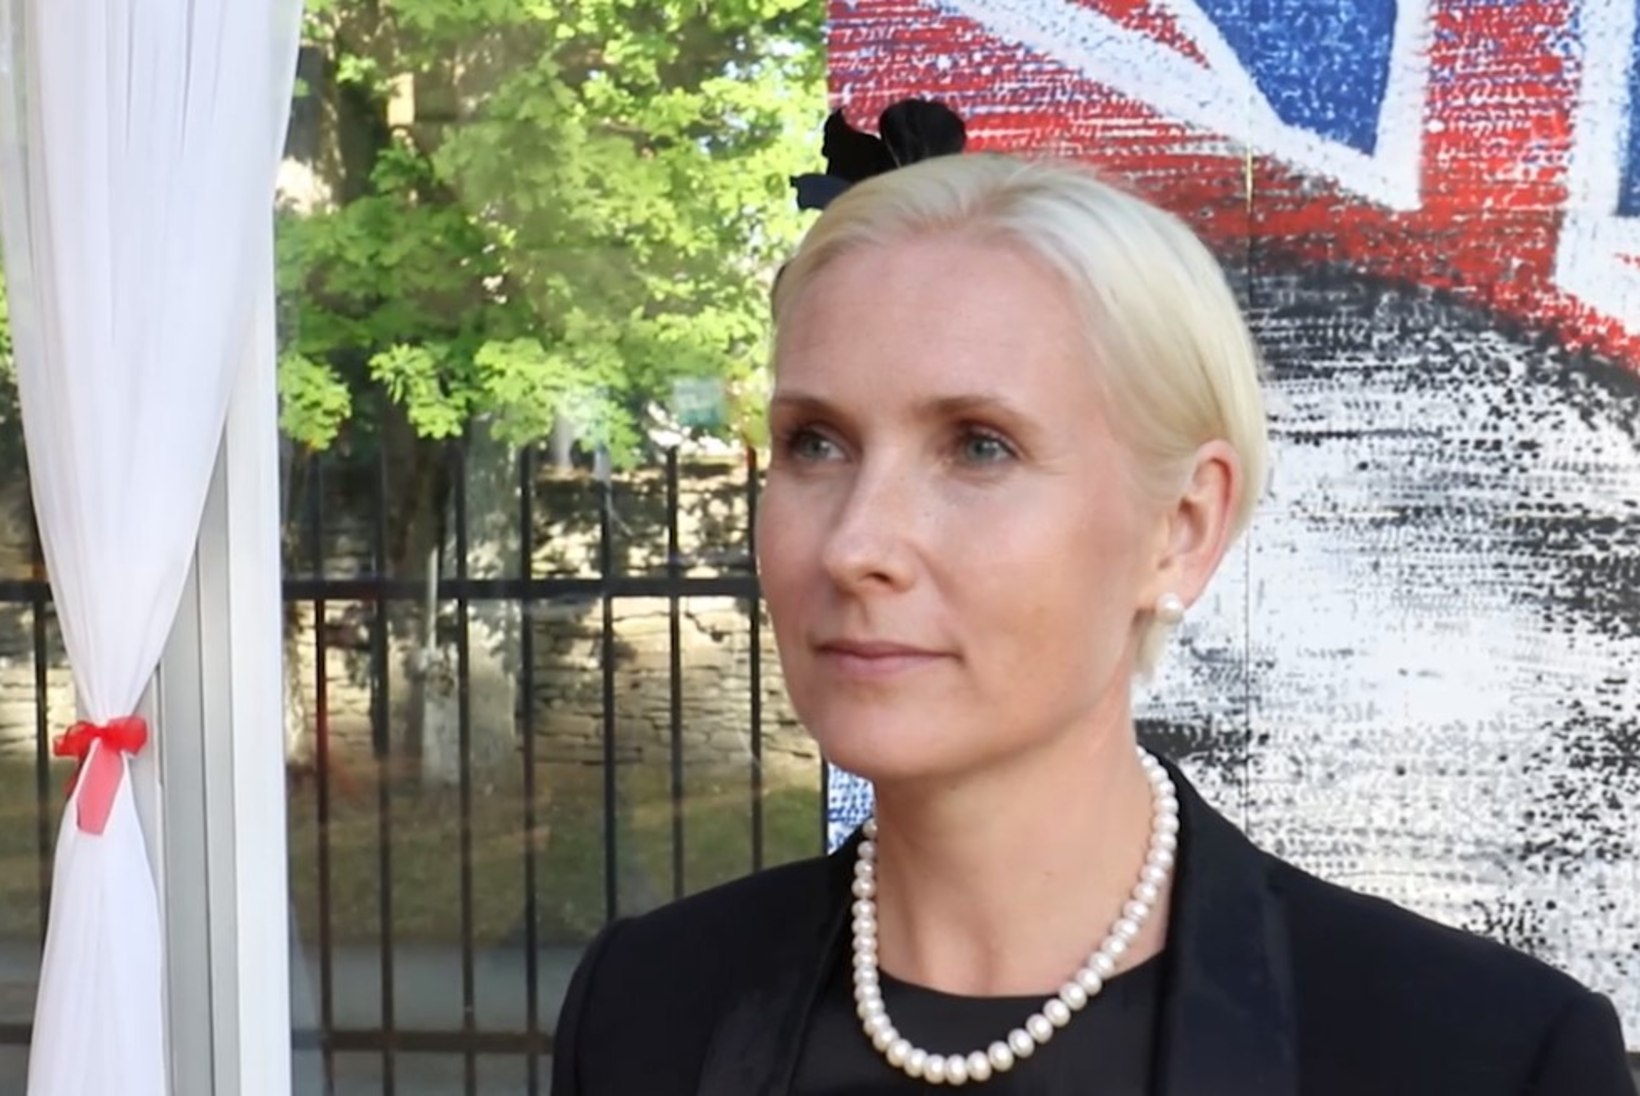 ÕHTULEHE VIDEO | Veronika Portsmuth väisas kübarapidu tänu Briti suursaadiku prouale